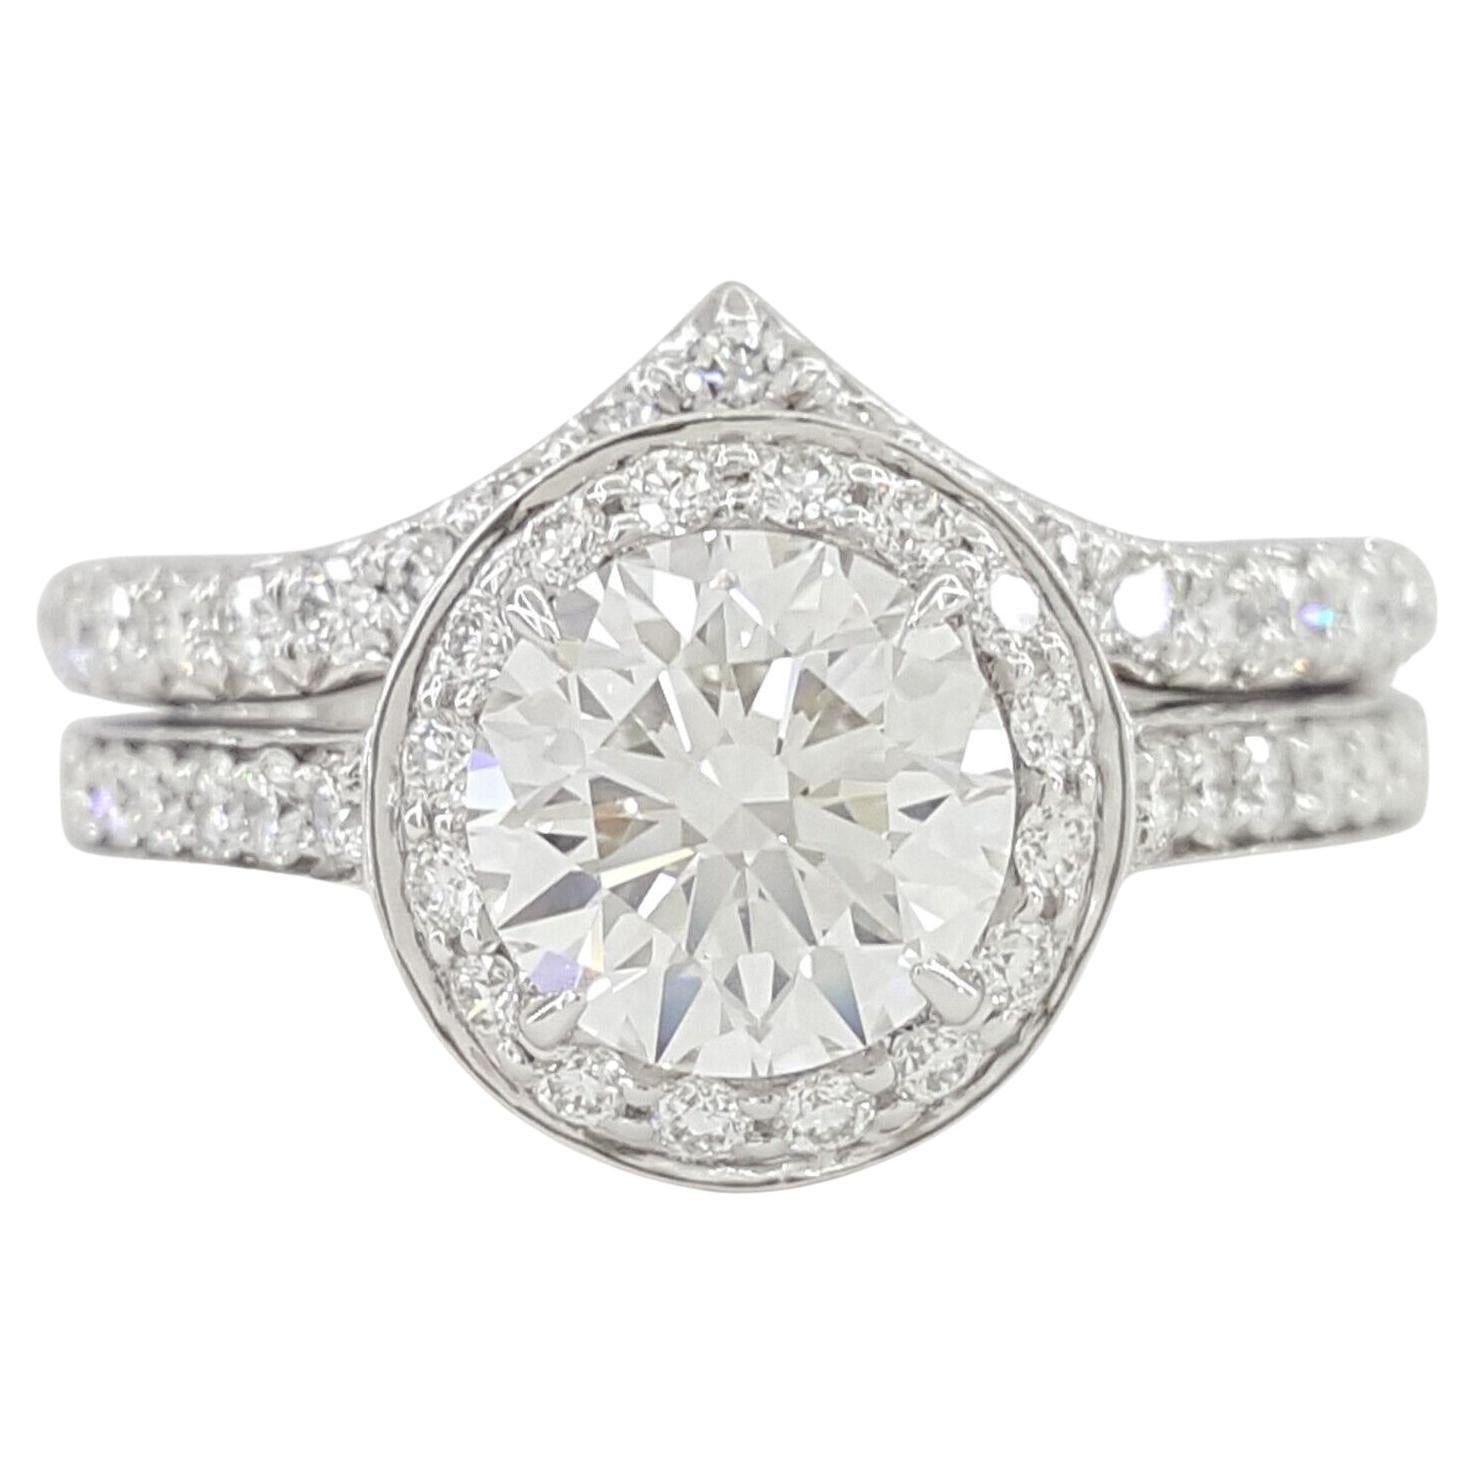 Tiffany & Co. Platinum Soleste Diamond Halo Engagement Ring and Wedding Band